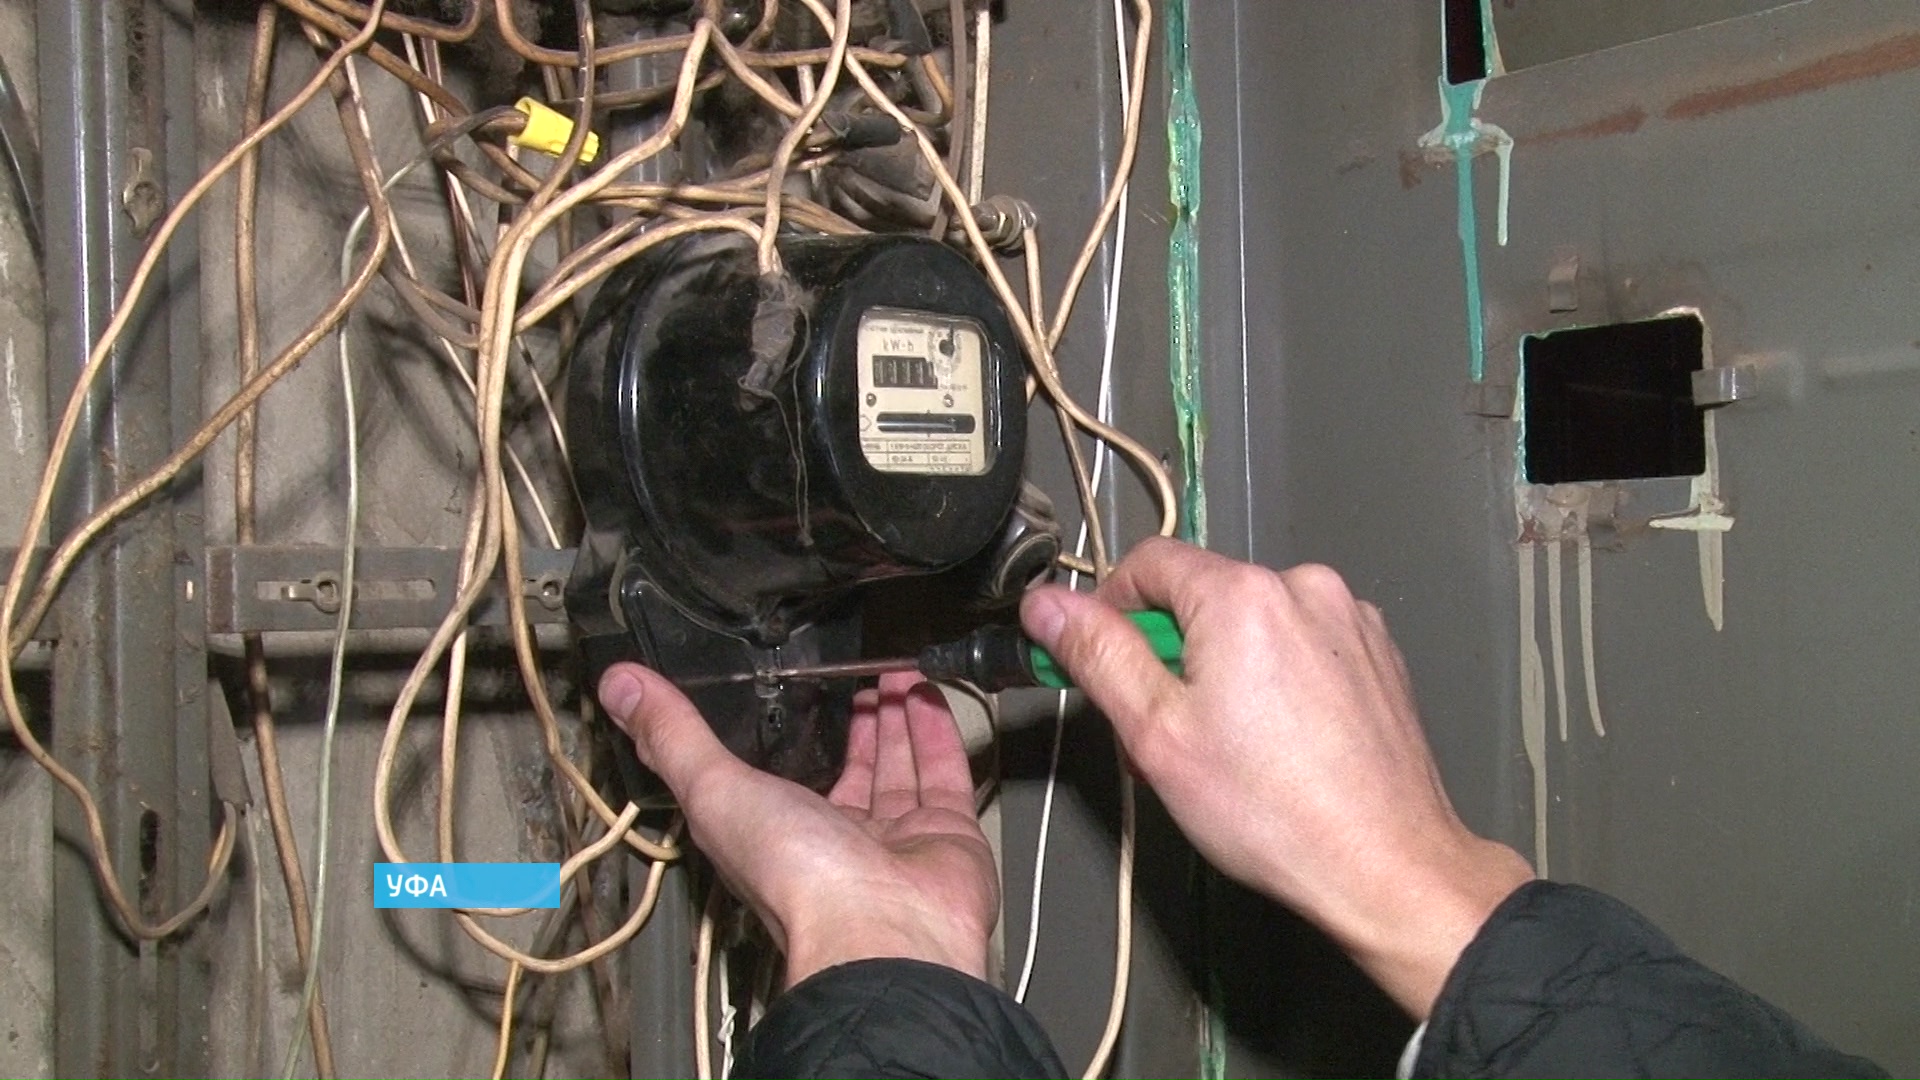 Старый электросчетчик: насколько законны требование его замены и доначисление «задним числом»? | электрические сети в системе | electricalnet.ru